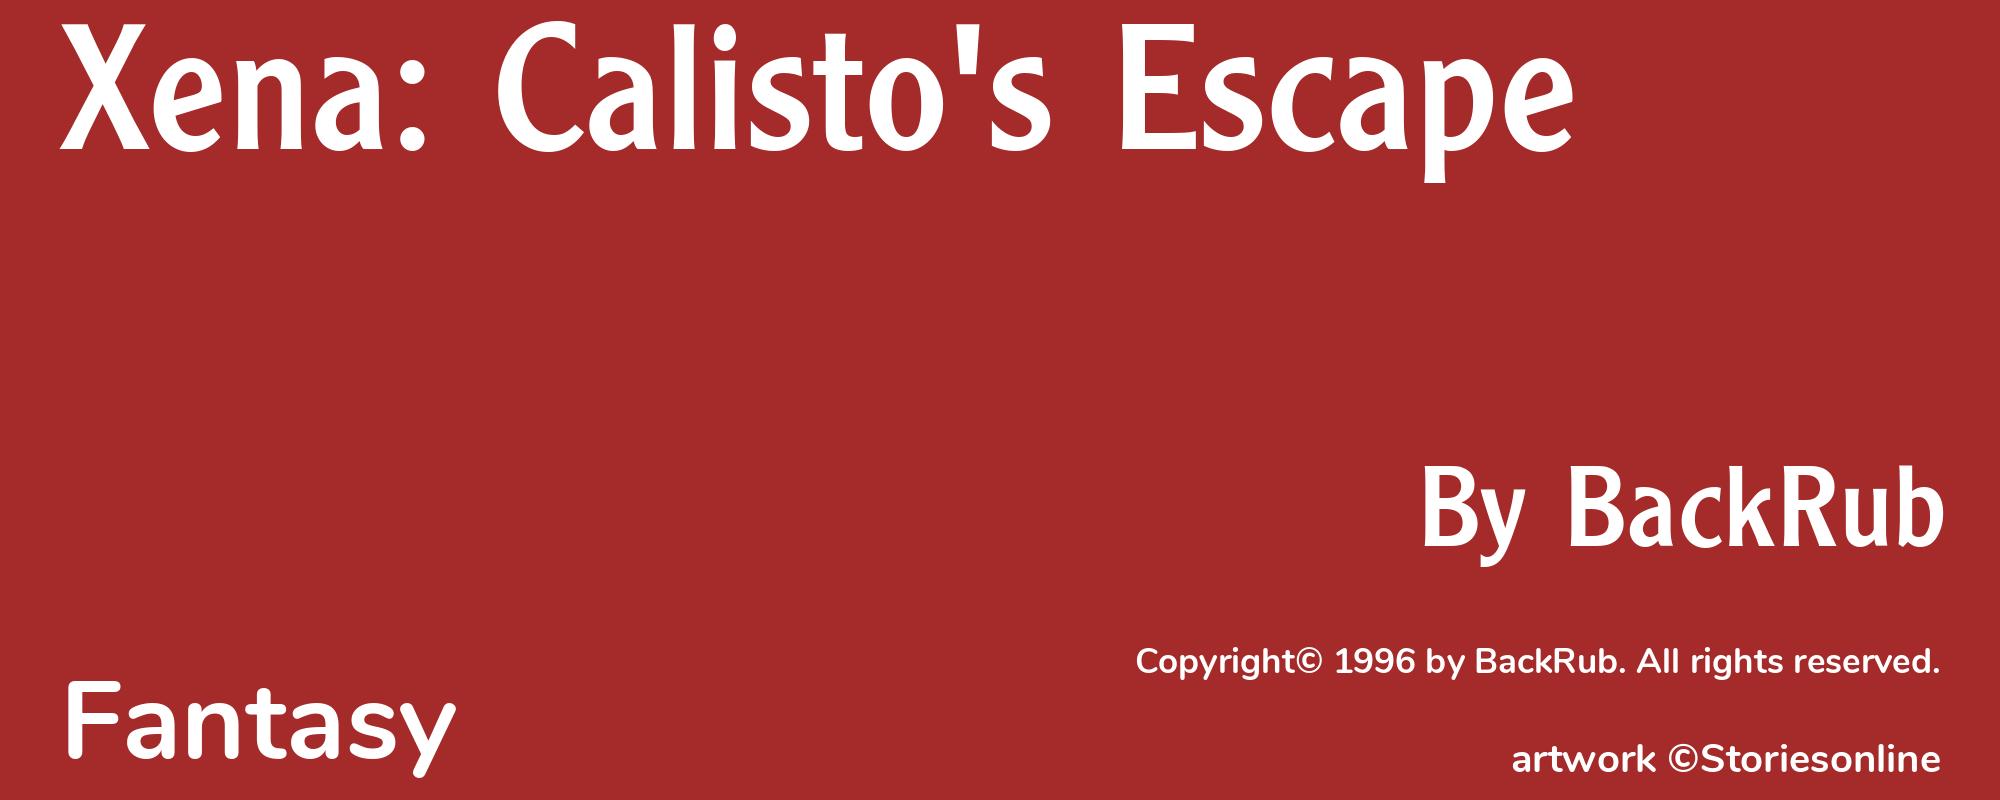 Xena: Calisto's Escape - Cover